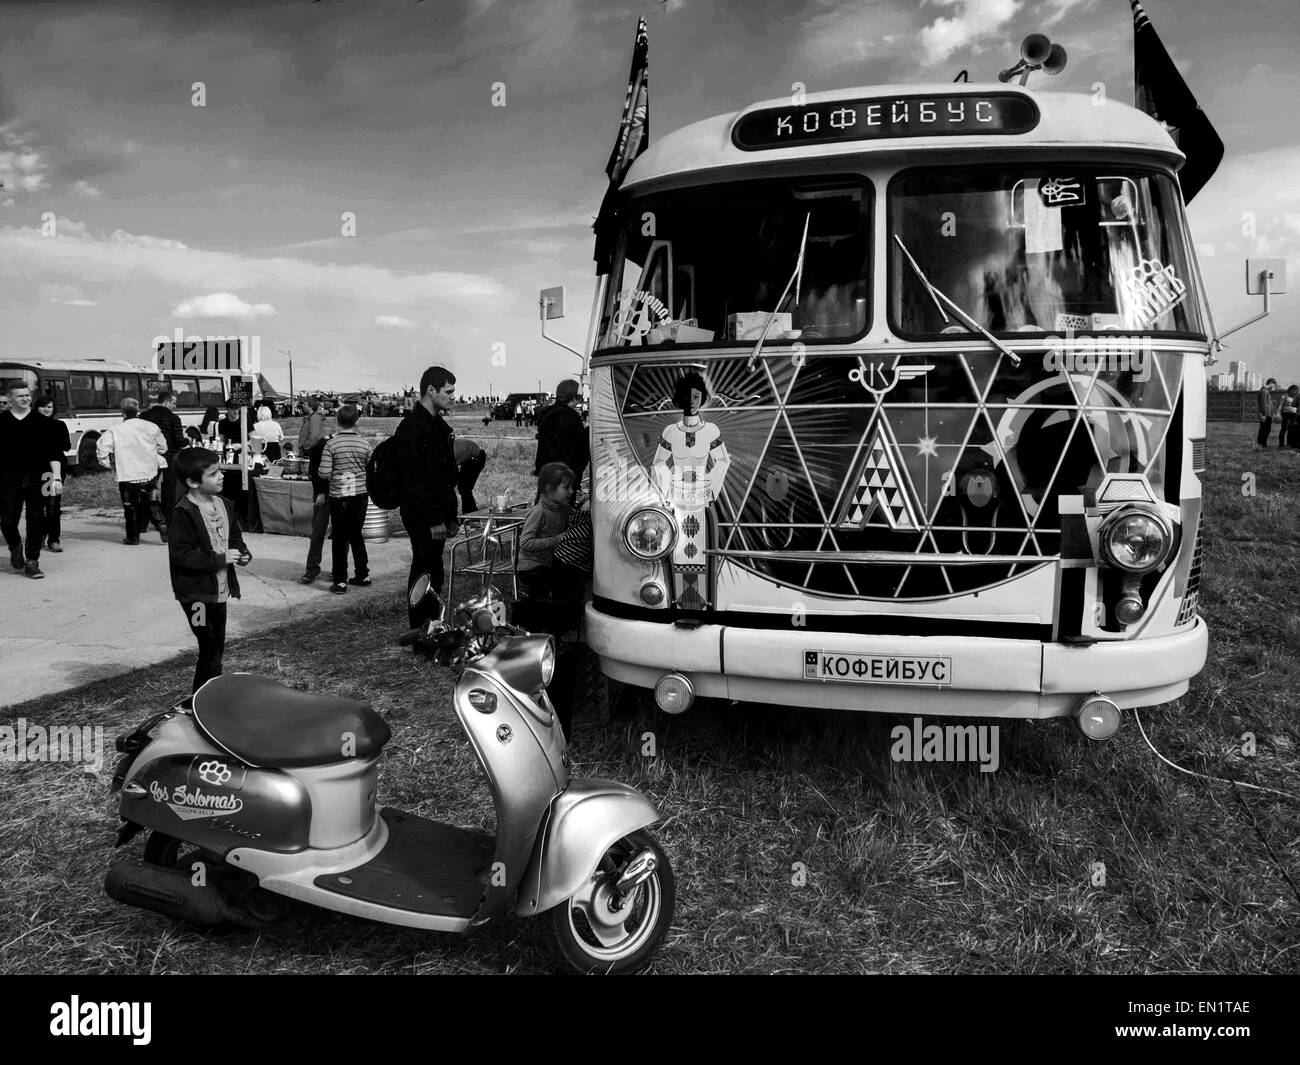 Bus antiguo Imágenes de stock en blanco y negro - Alamy